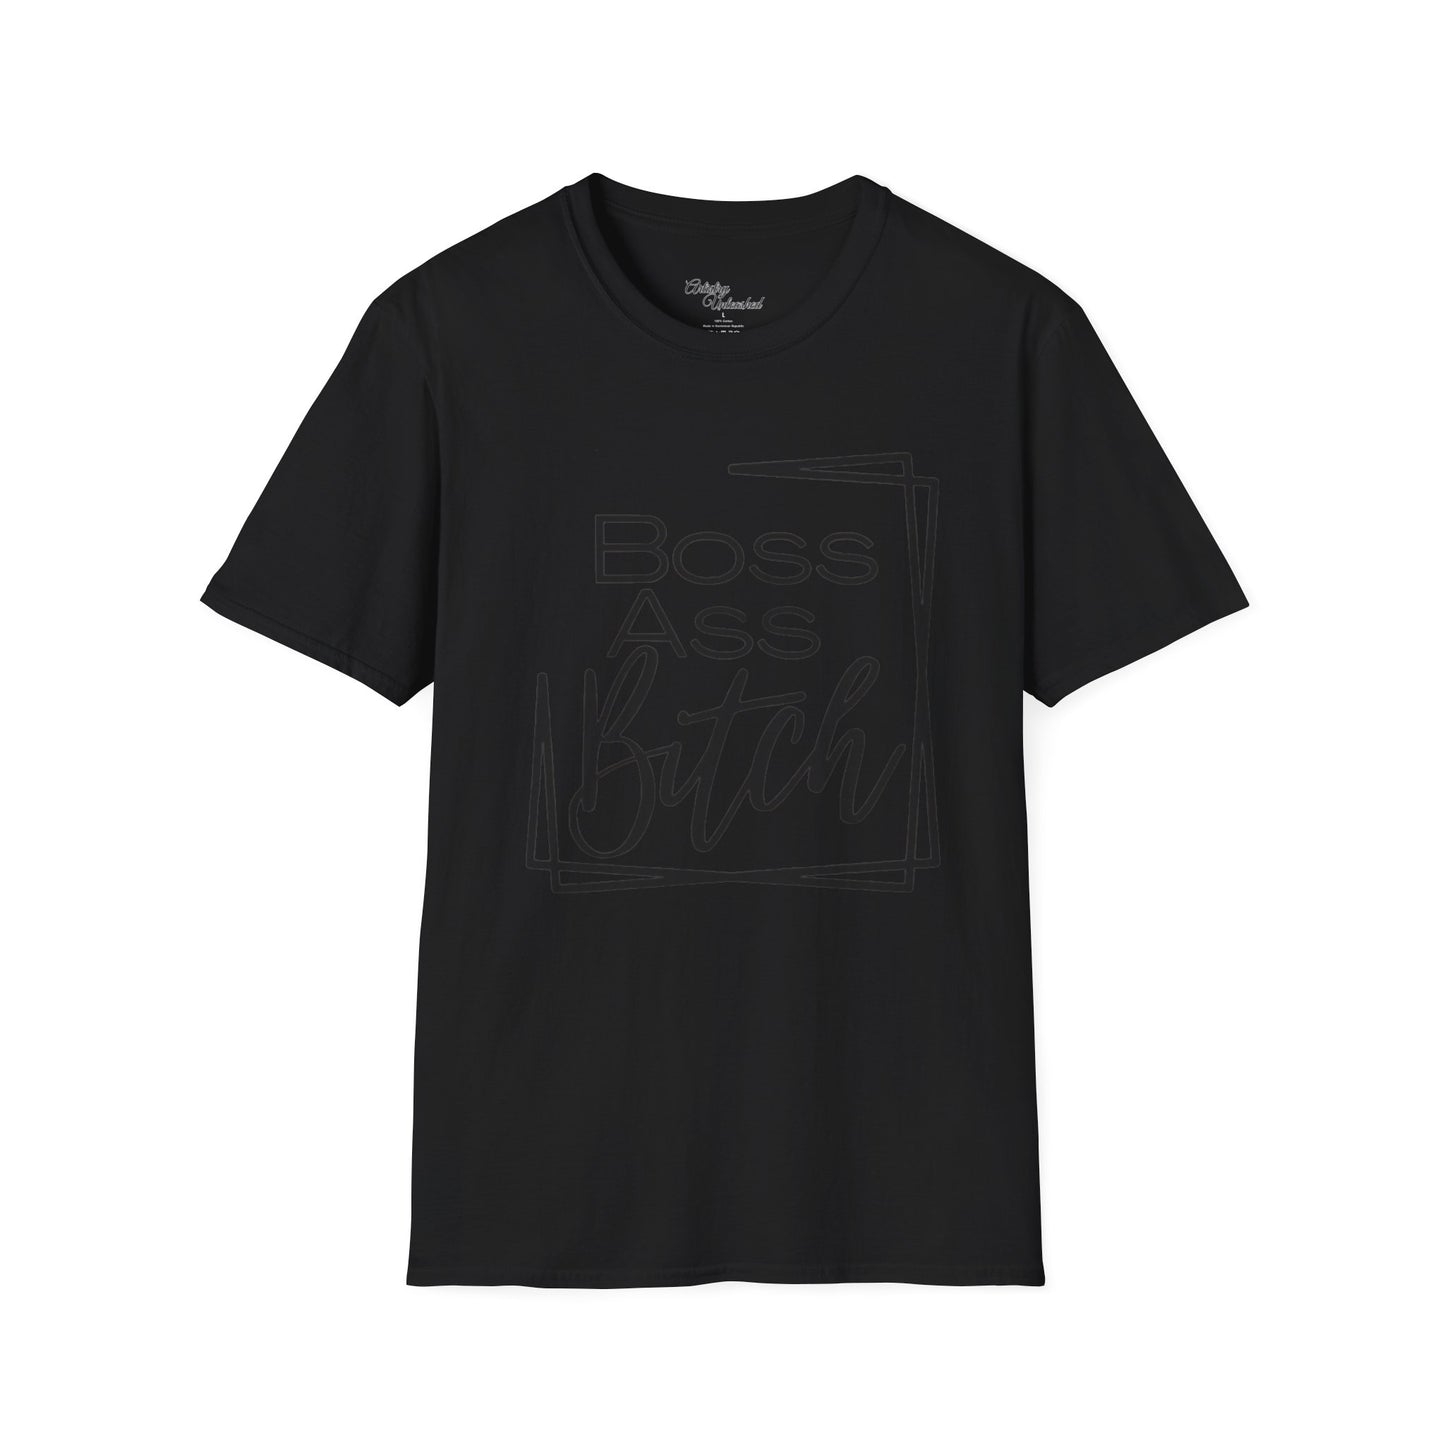 Boss B*tch Unisex Softstyle T-Shirt